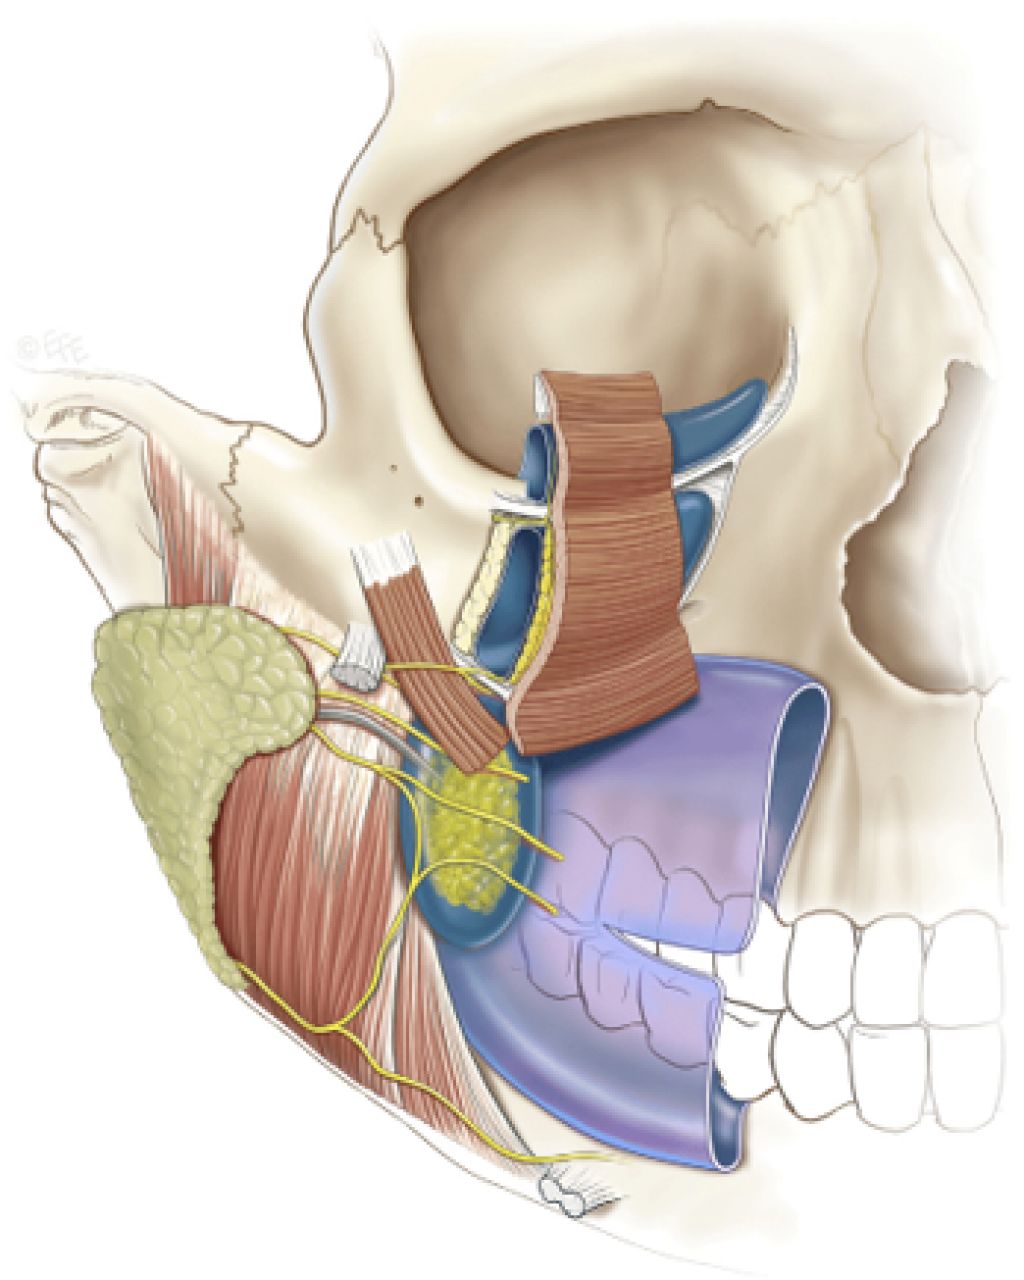 image showing mandibular joint disorder